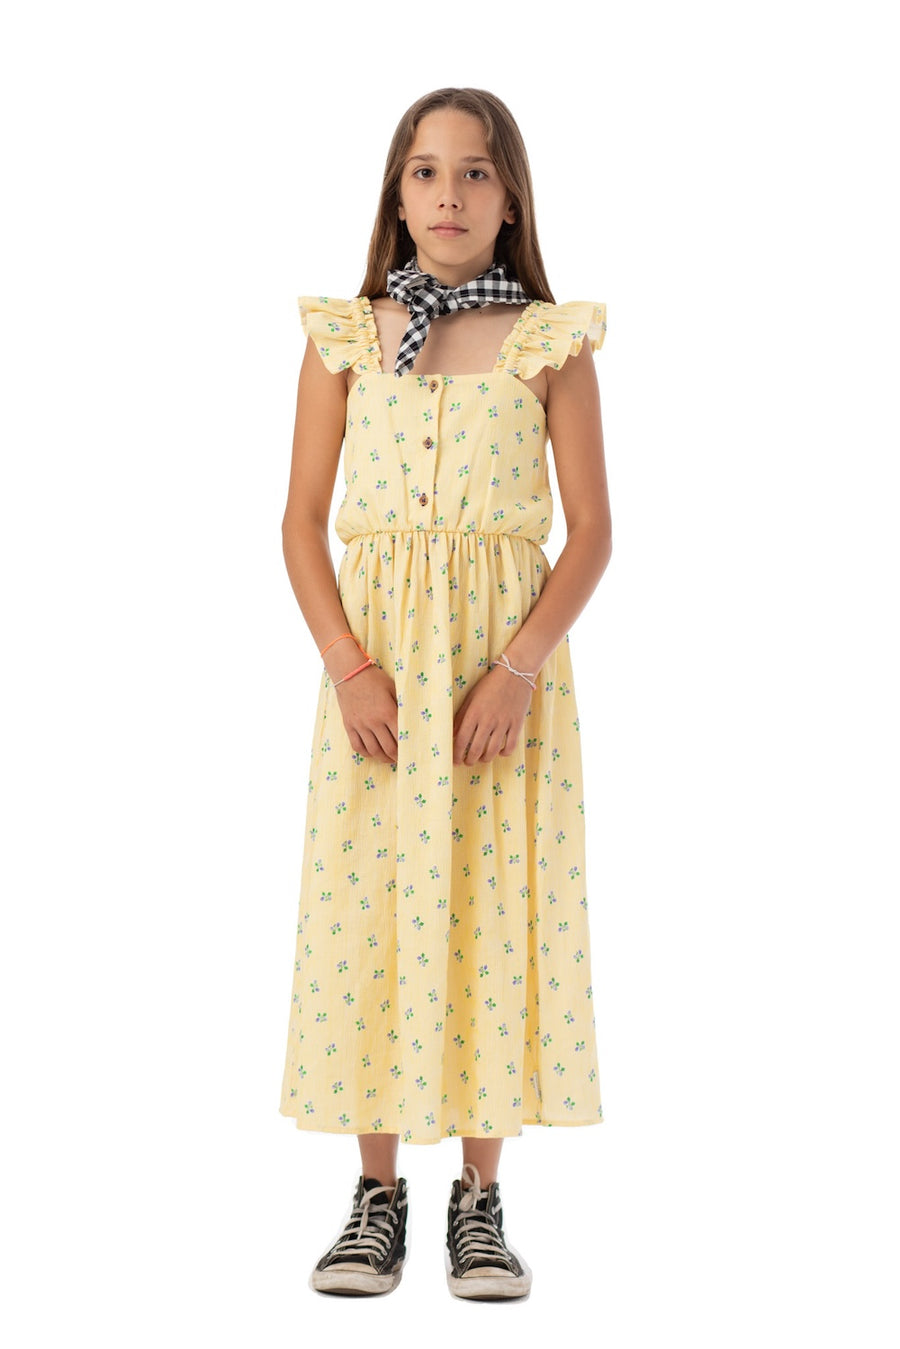 [piupiuchick]   long dress | yellow stripes w/ little flowers